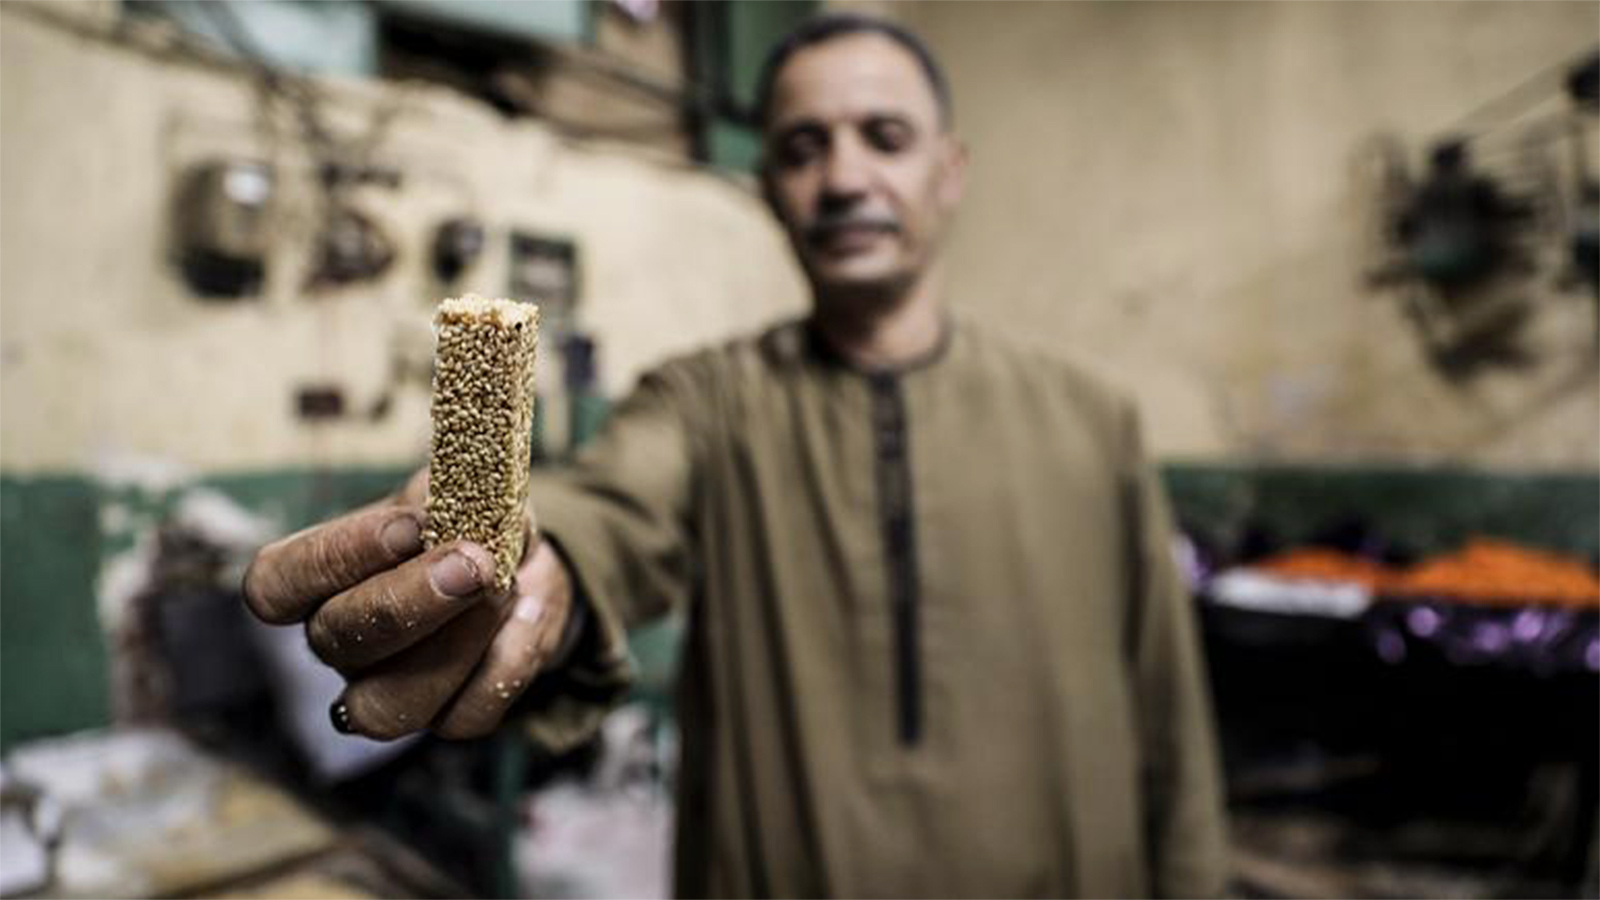  الحاج عبده يحرص على المشاركة في صناعة تماثيل الحلوى منذ 35 عاما  (الفرنسية)